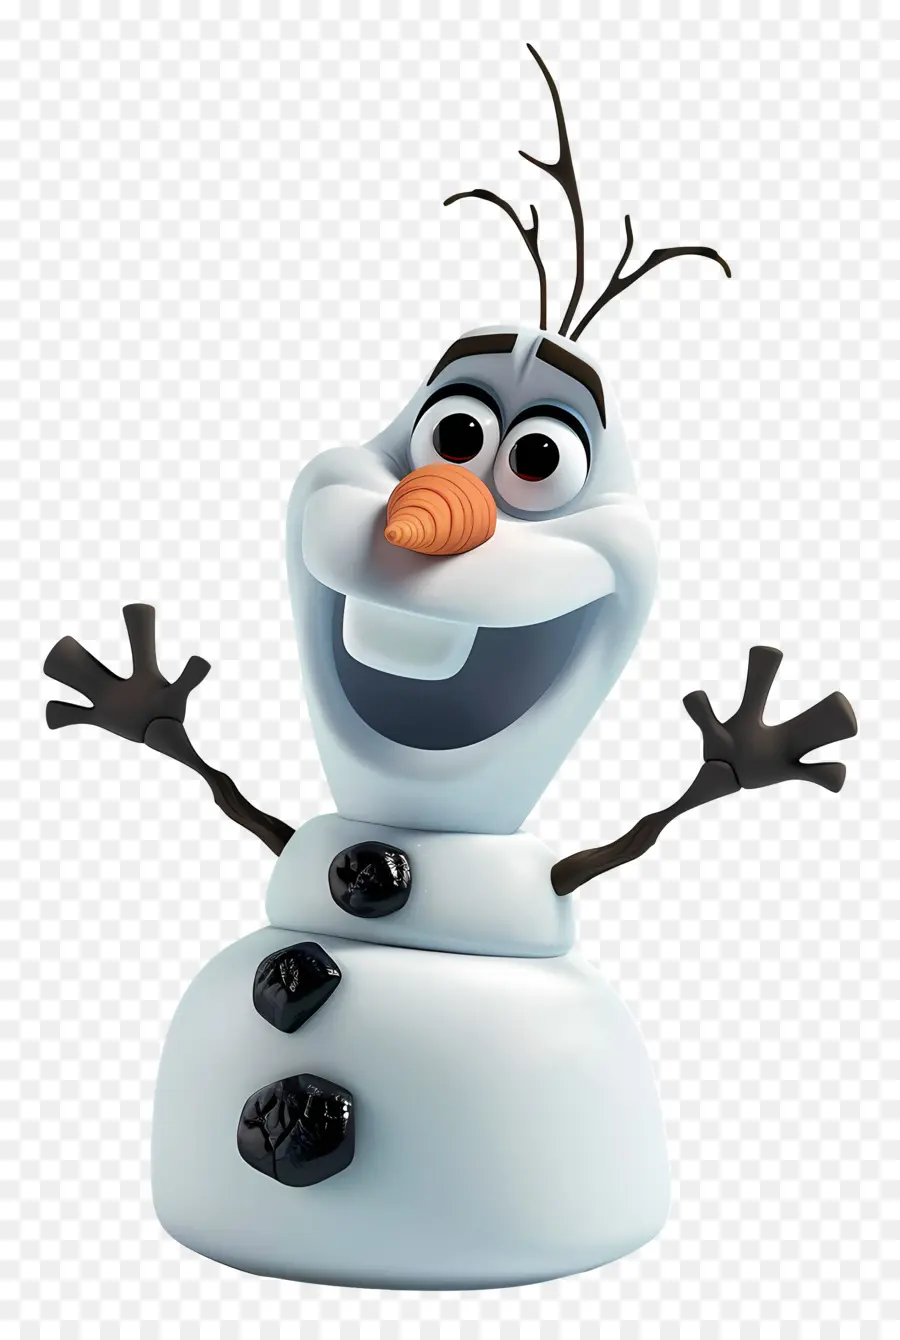 Frozen OLAF - Zeichentrickfigur mit Geschenken und Lächeln